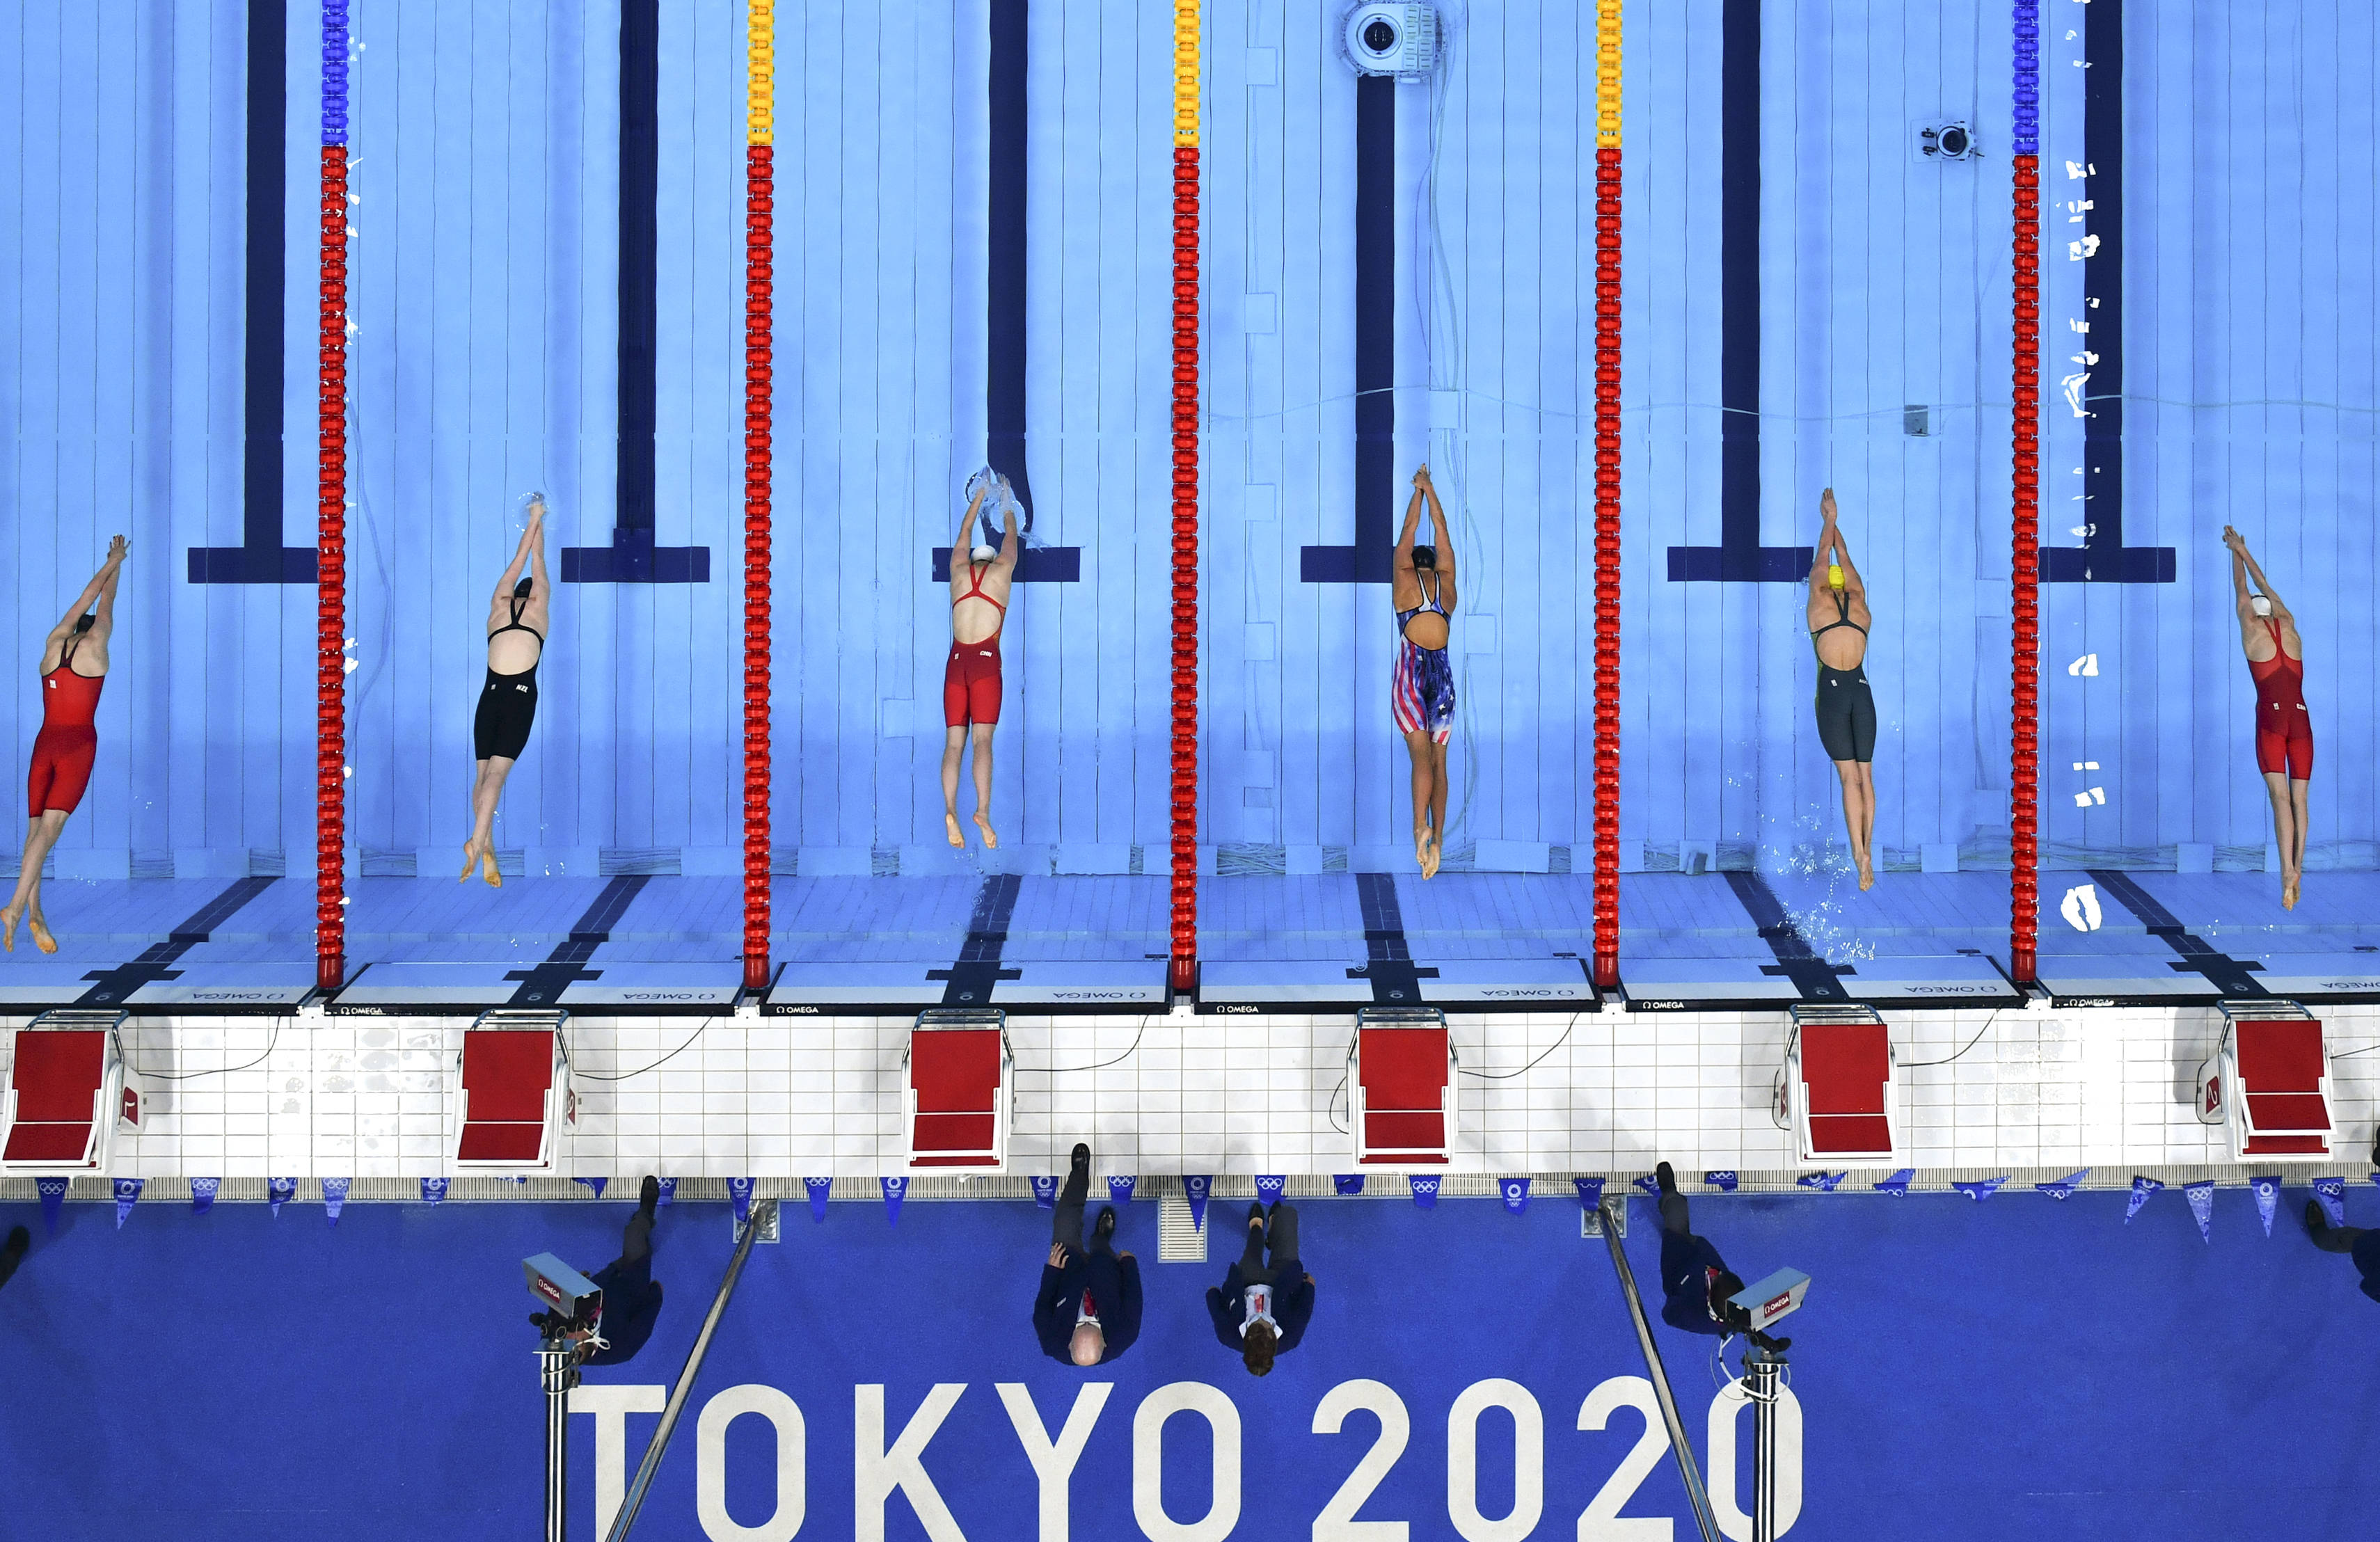 游泳——李冰洁获女子400米自由泳铜牌